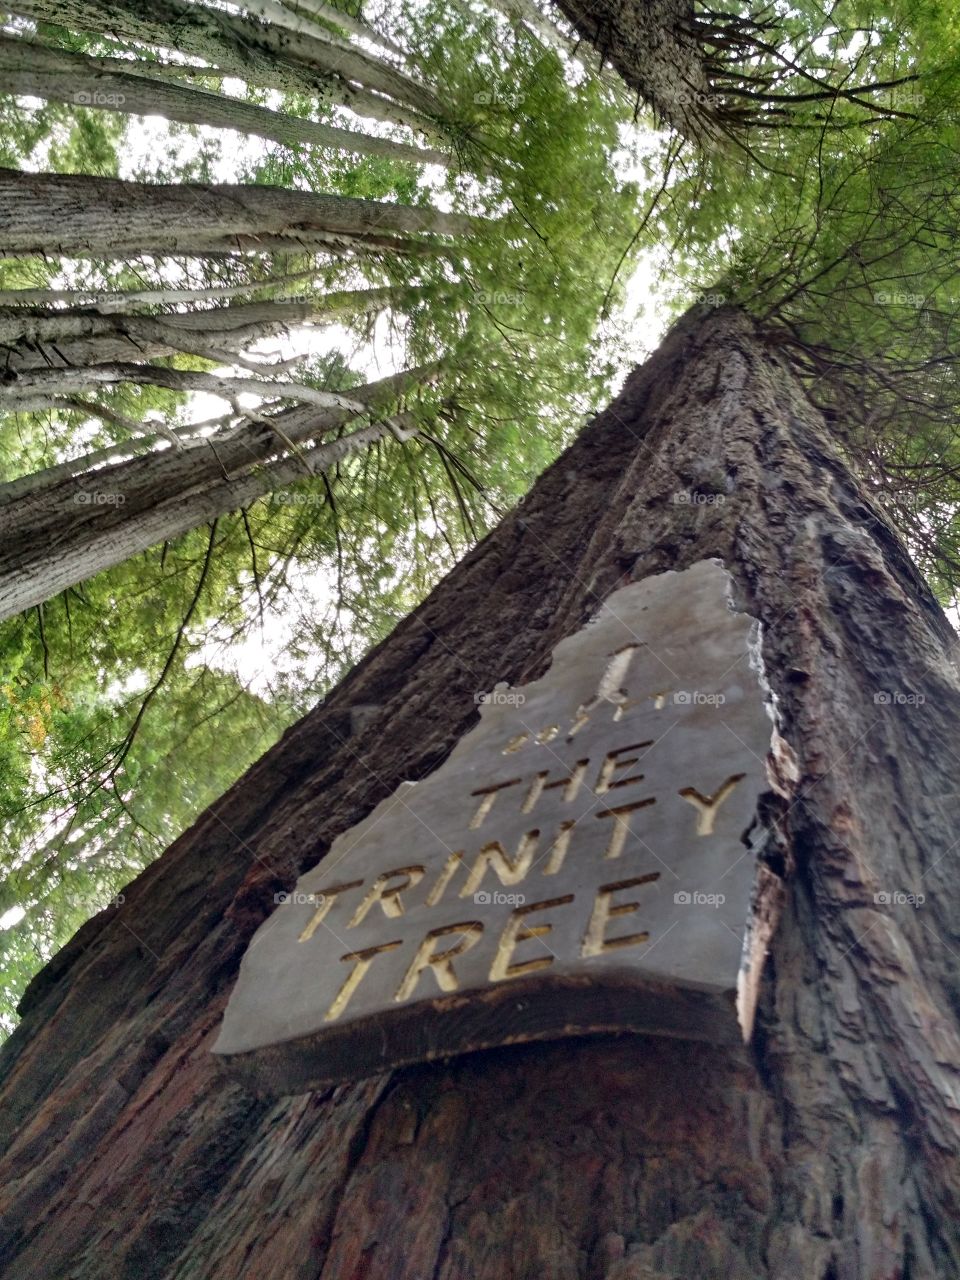 Trinity Tree. Trees of Mystery, CA